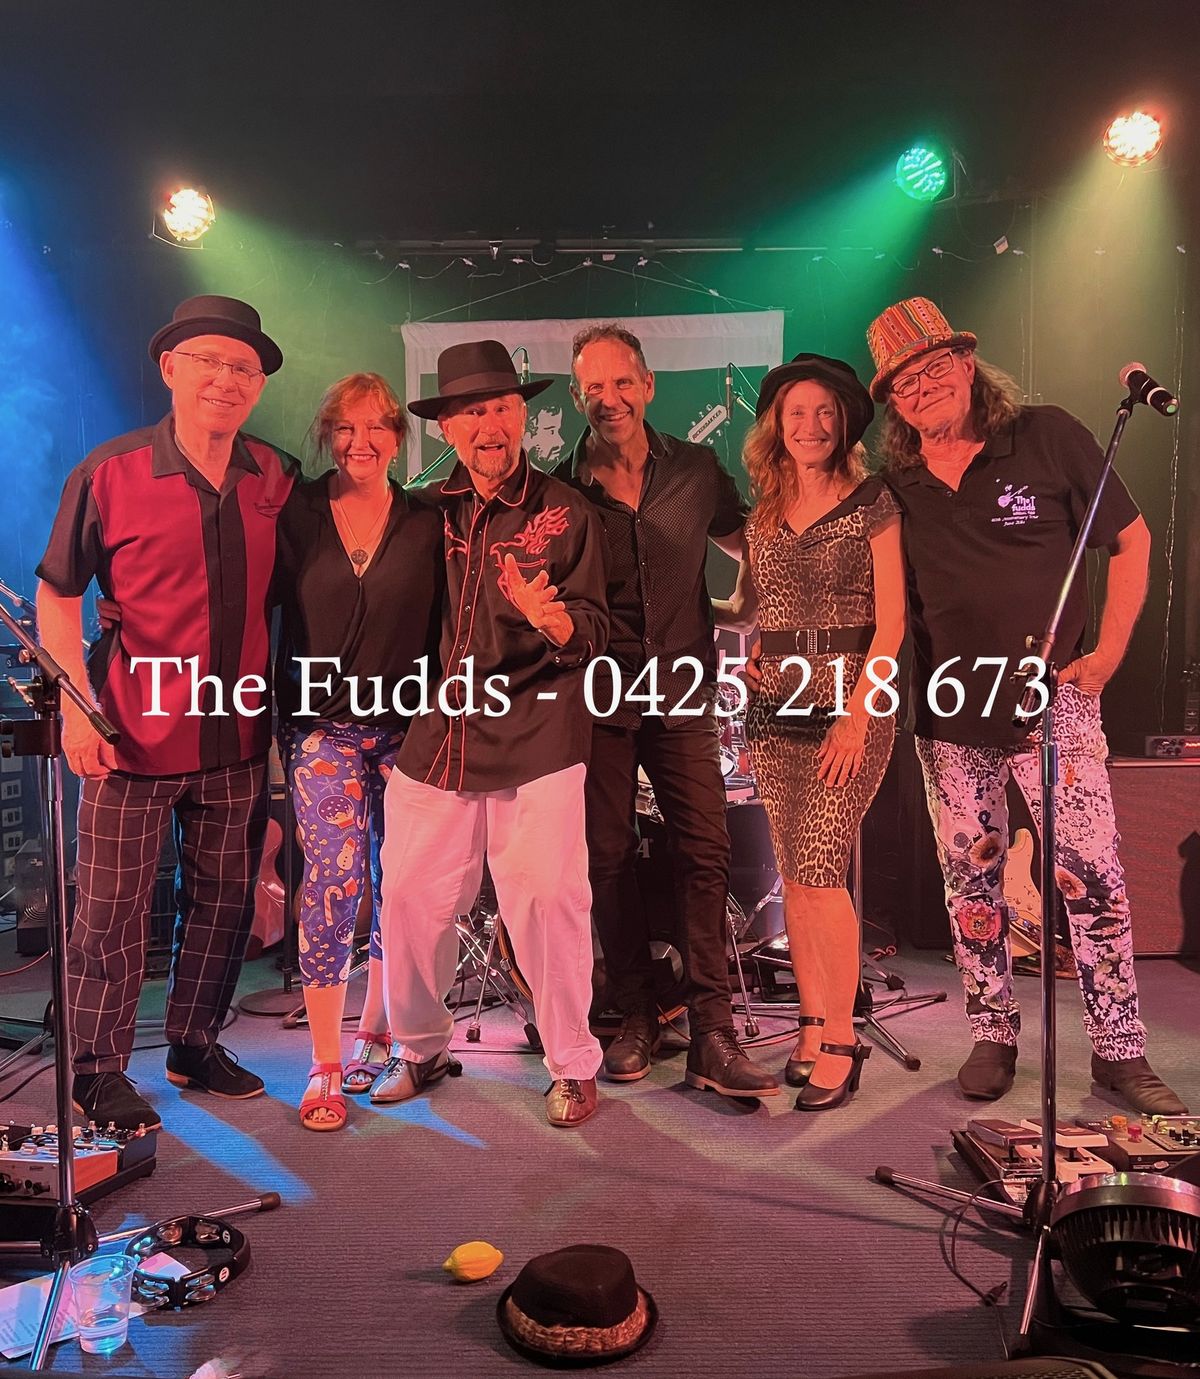 The Fabulous Fudds at Dundas Sport and Rec